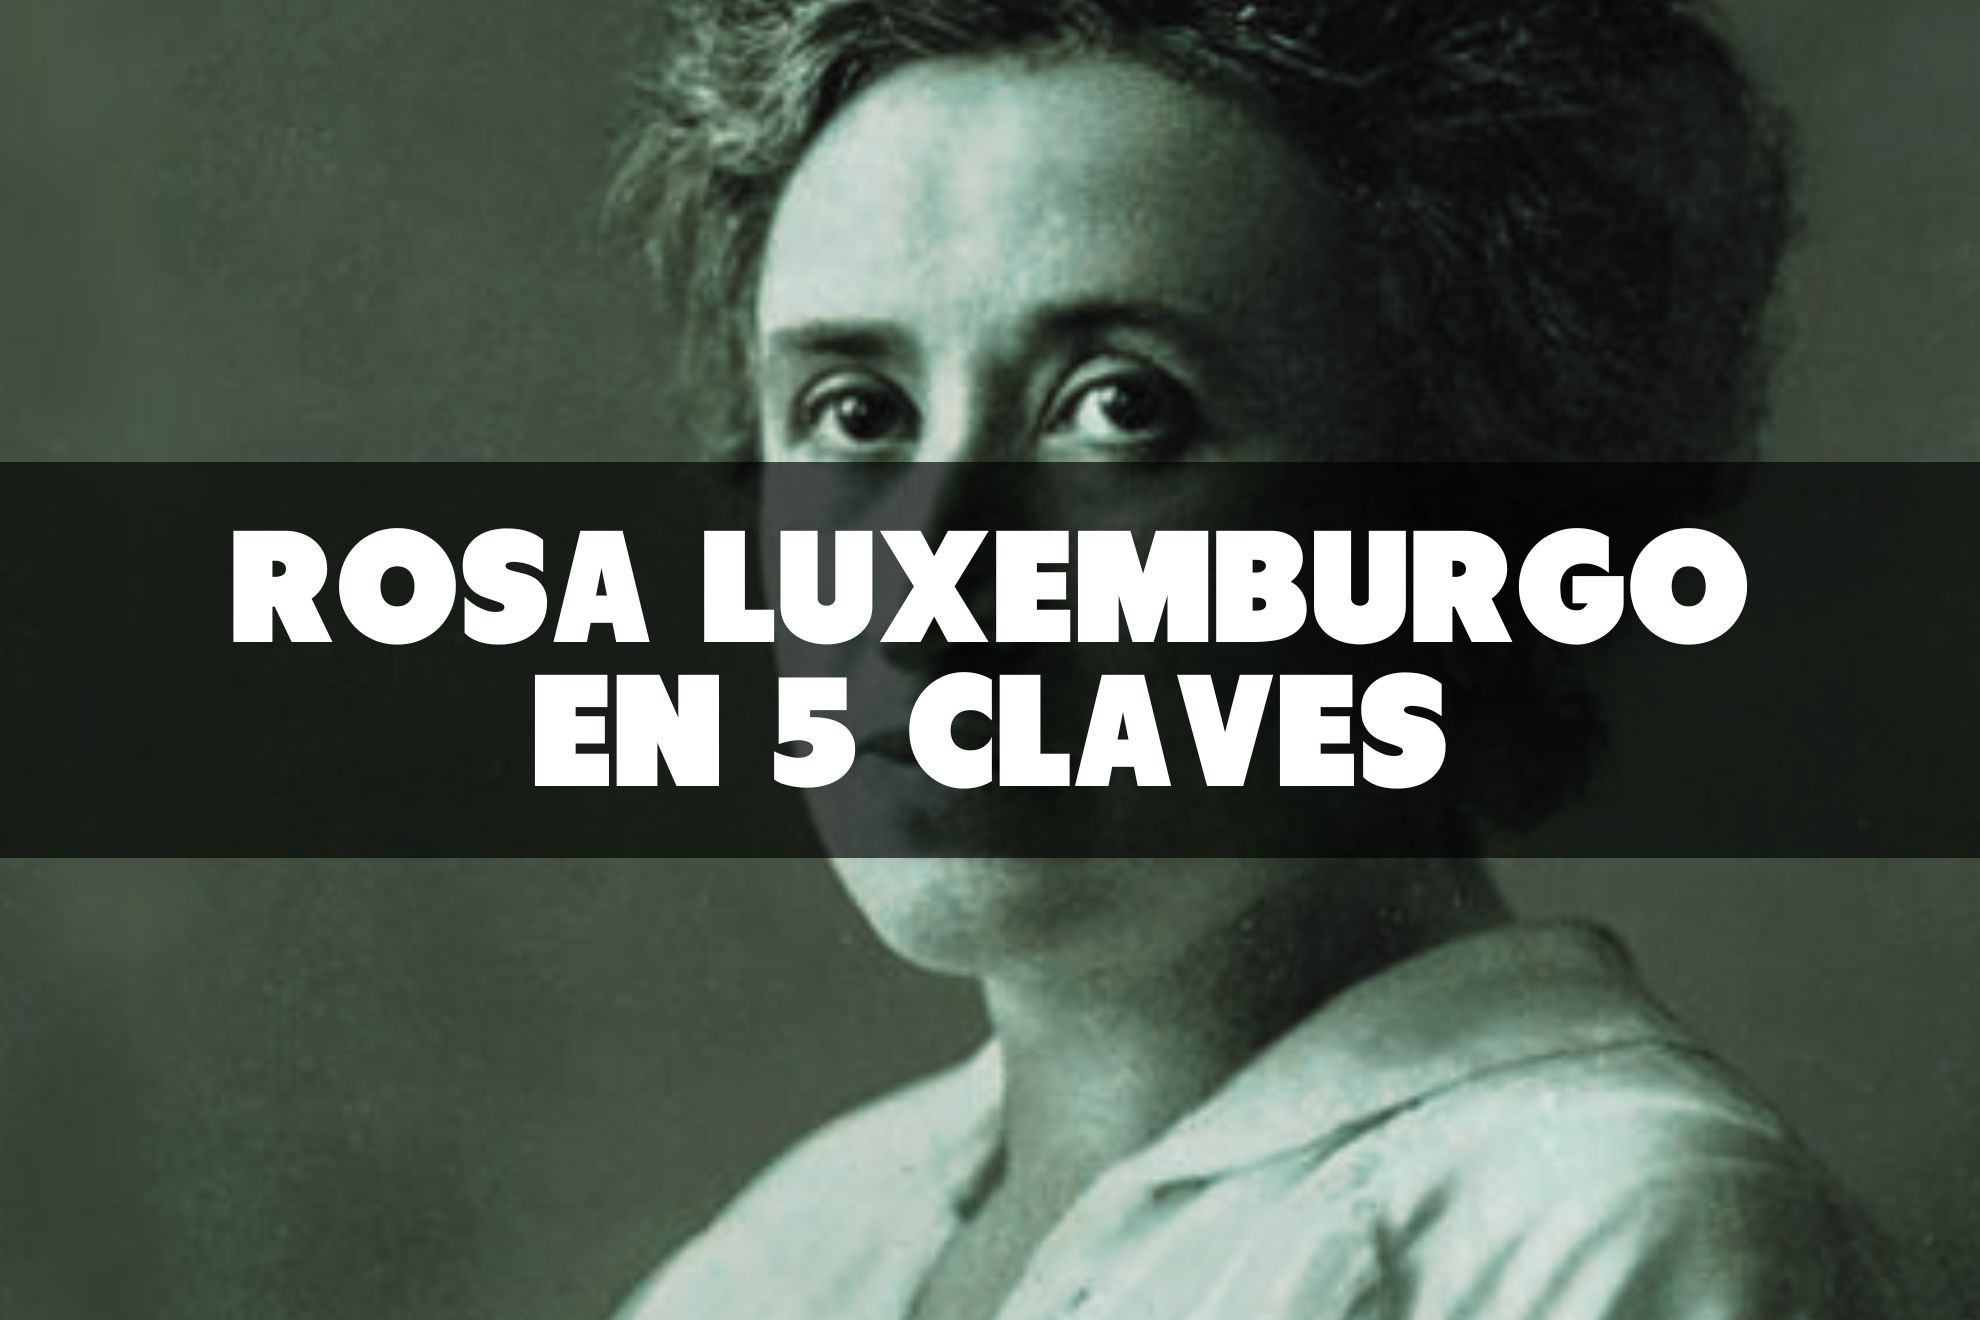 5 claves del pensamiento revolucionario de Rosa Luxemburgo